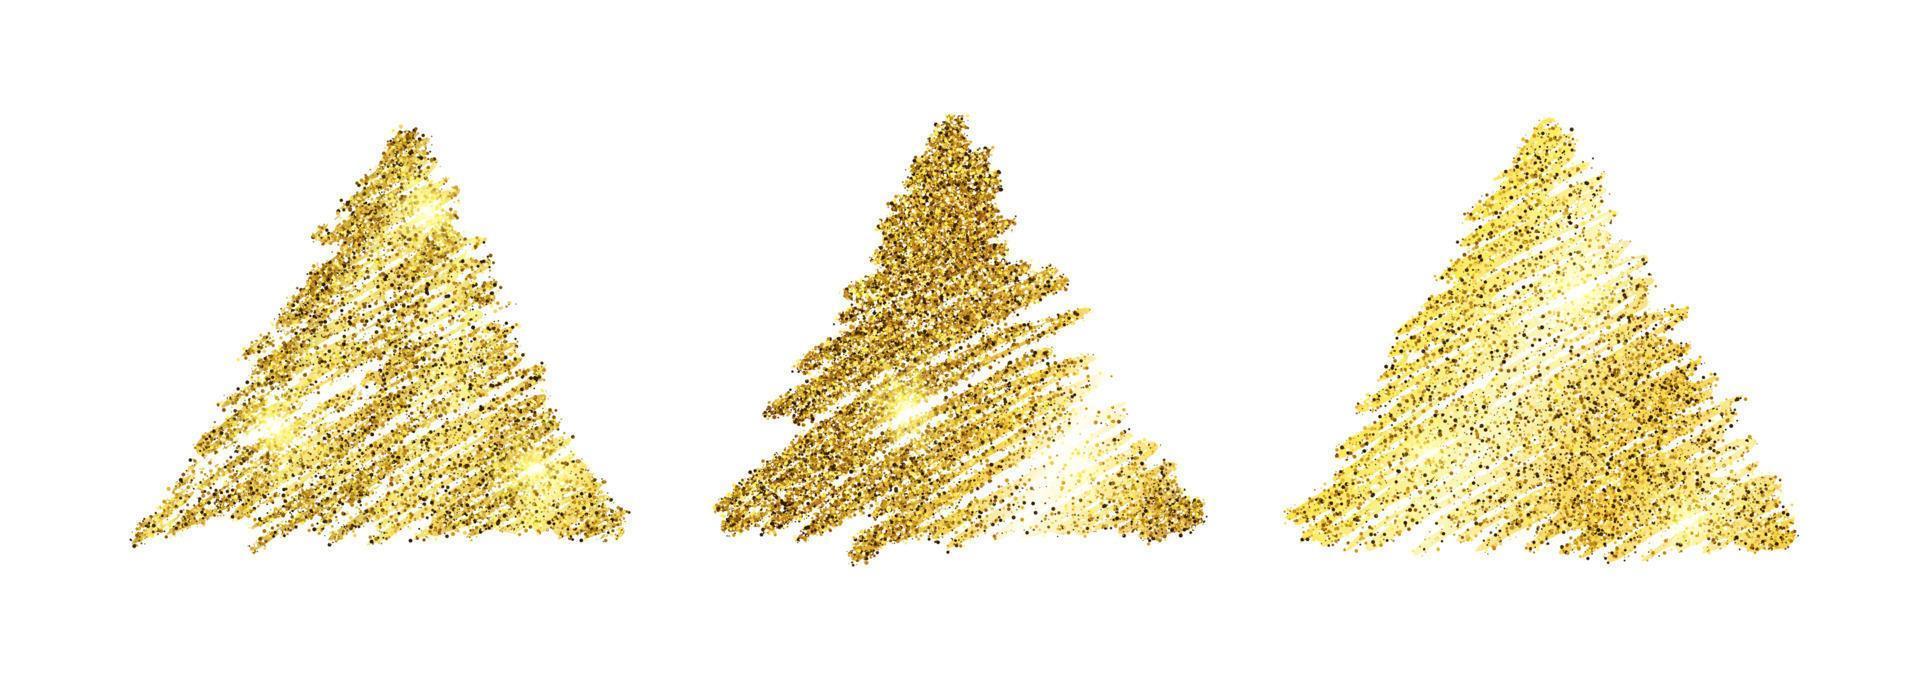 uppsättning av tre gyllene måla hand dragen glittrande trianglar på en vit bakgrund. bakgrund med guld pärlar och glitter effekt. tömma Plats för din text. vektor illustration